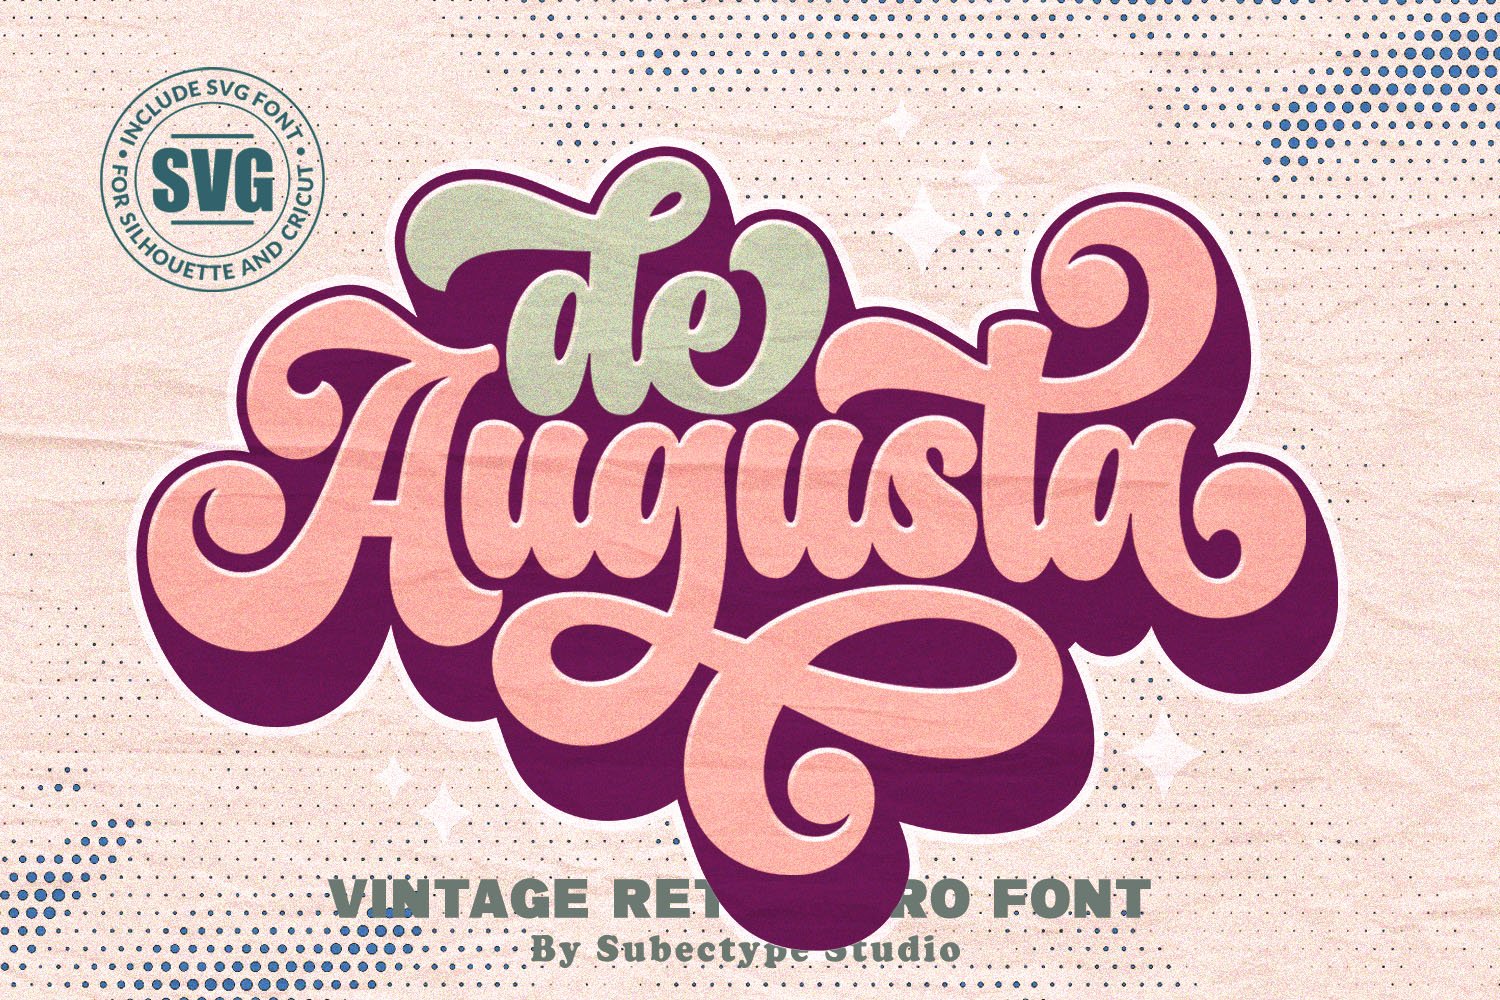 De Augusta - Vintage Retro Font cover image.